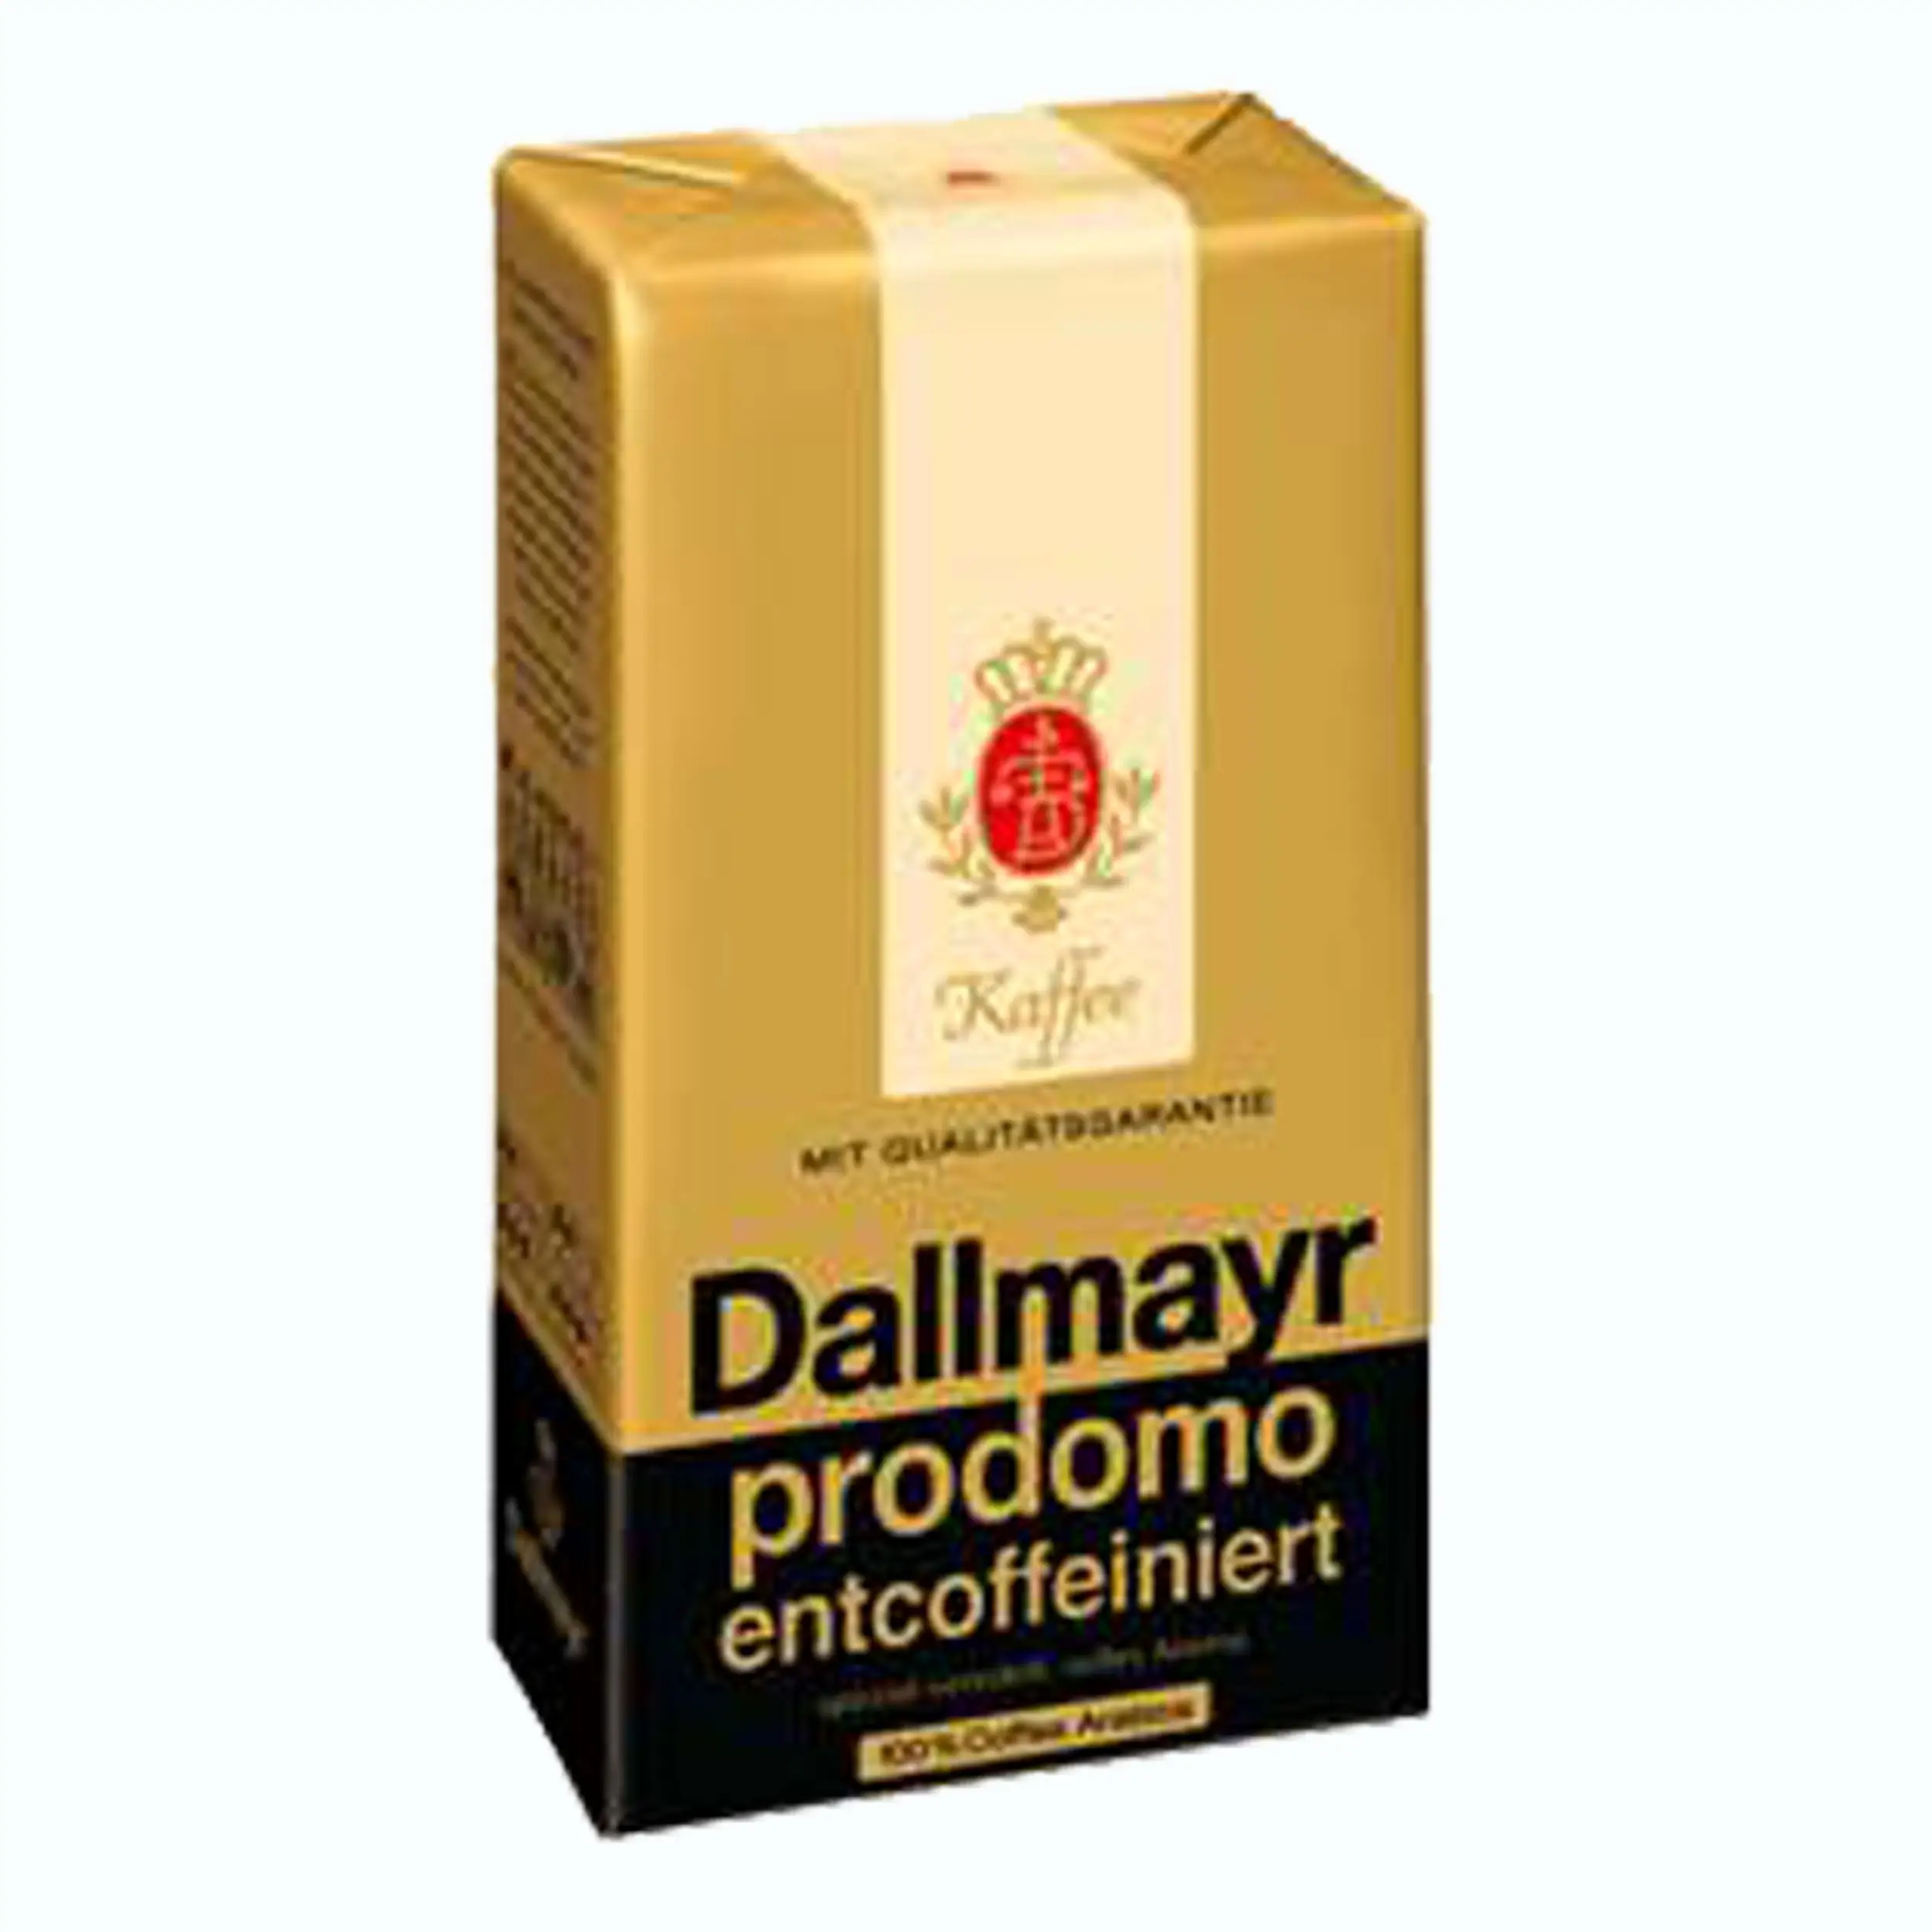 Молотый кофе 500 г. Молотый Dallmayr "Prodomo" 500 гр. Даллмайер кофе молотый 500 гр. Кофе молотый Dallmayr Prodomo 500г. Dallmayr кофе Entcoffeiniert.